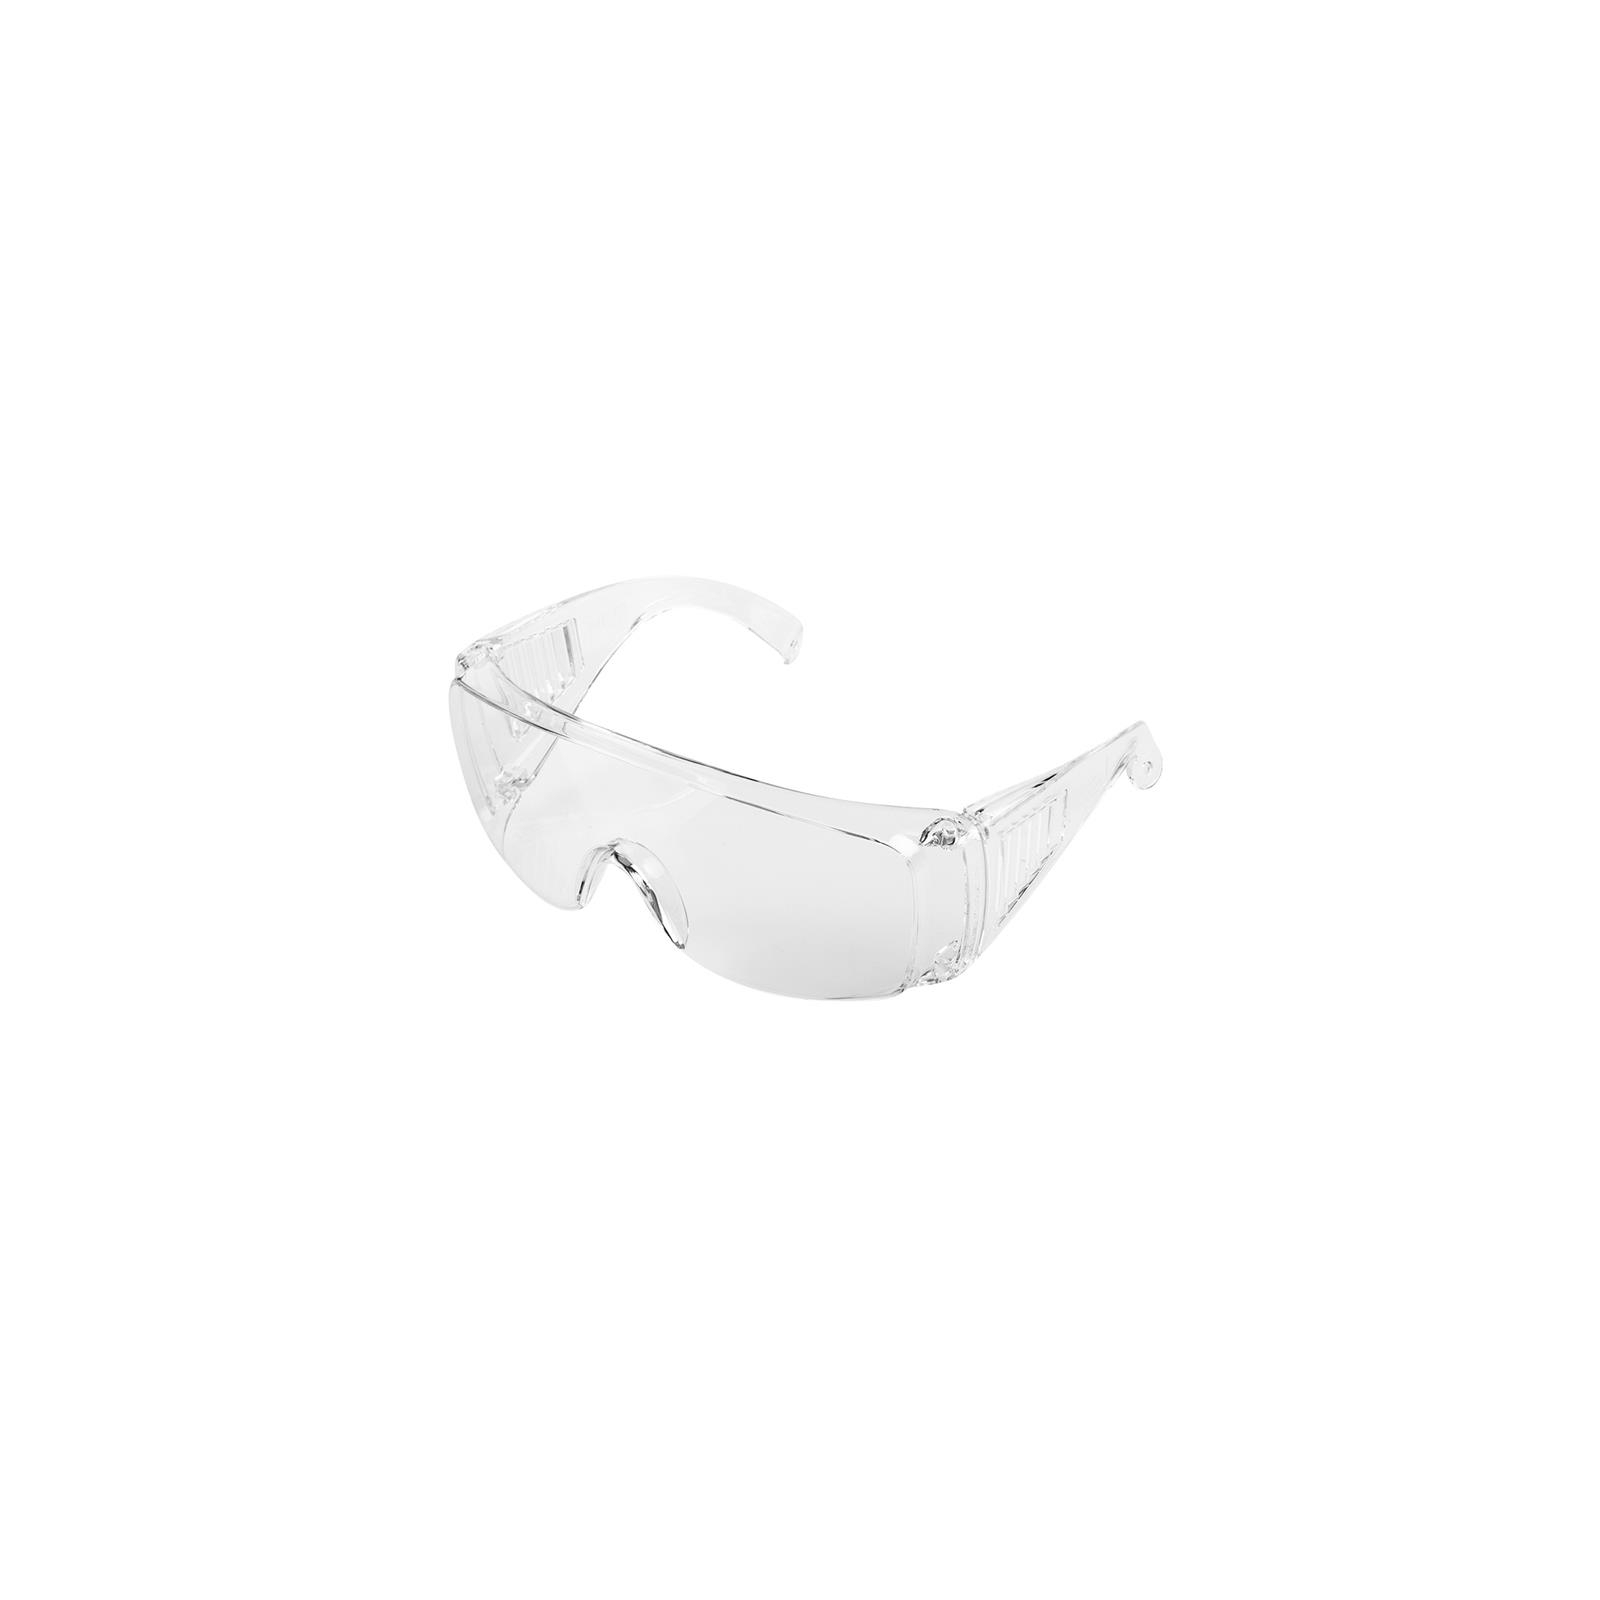 Захисні окуляри Neo Tools протиосколкові, клас захисту F, оптичний клас I, УФ-фільтр, прозорі (97-508)